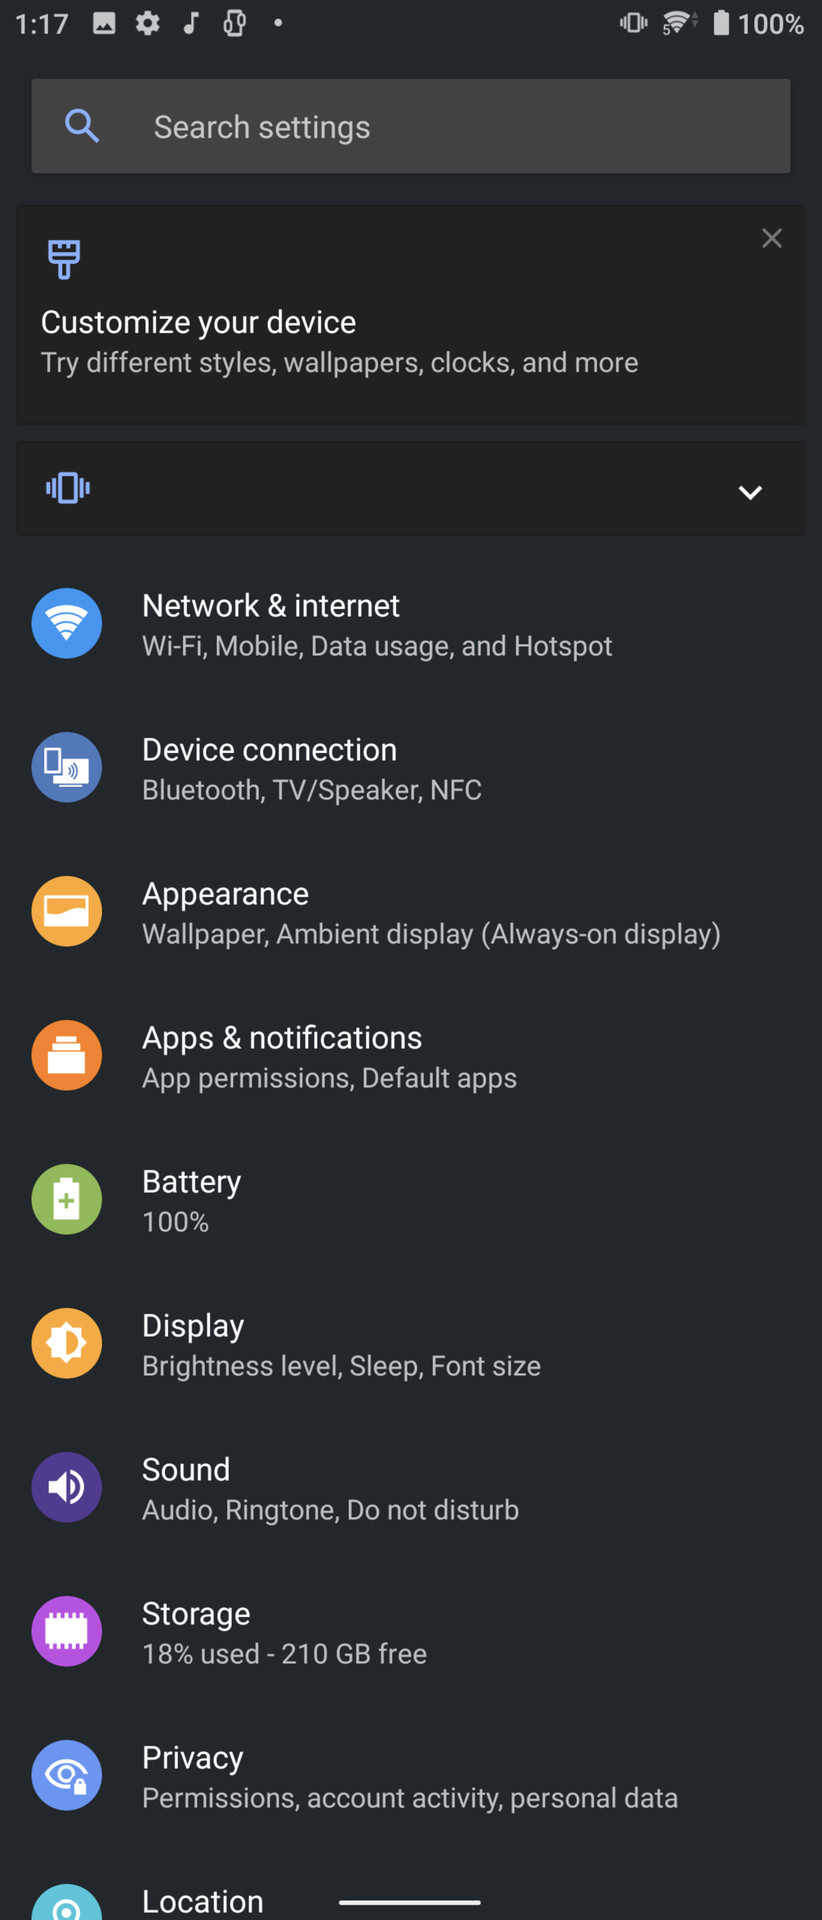 Sony Xperia 1 II settings menu